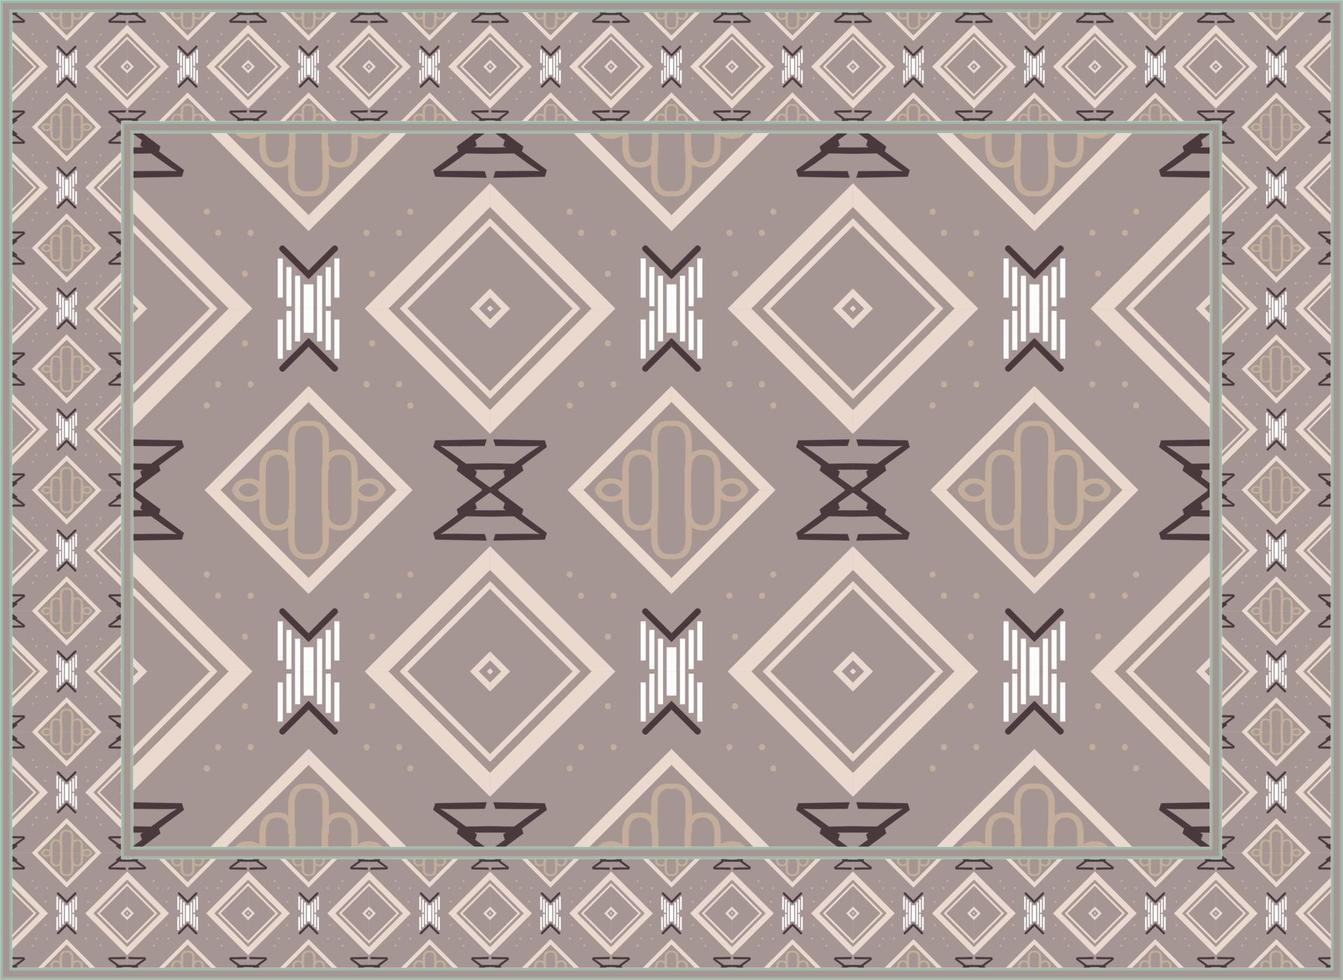 antiguo persa alfombra, africano étnico sin costura modelo moderno persa alfombra, africano étnico azteca estilo diseño para impresión tela alfombras, toallas, pañuelos, bufandas alfombra, vector